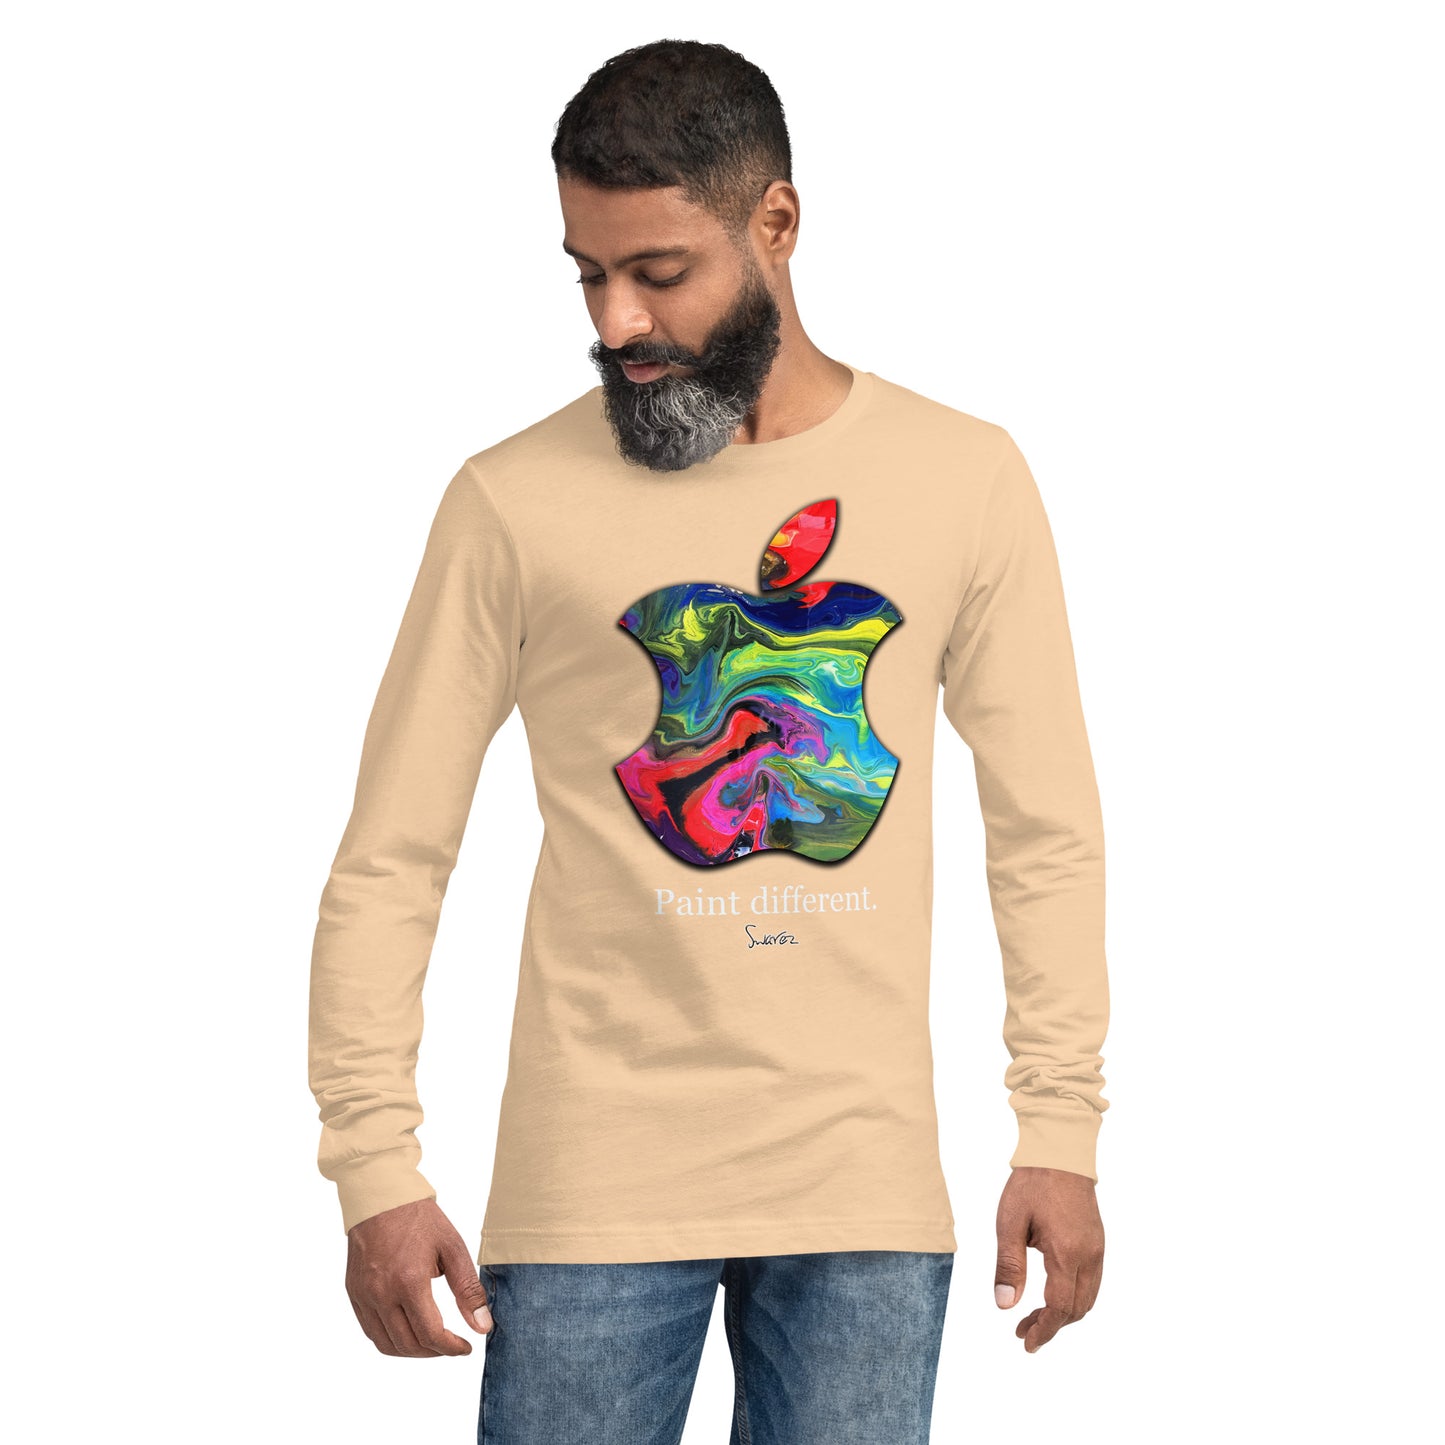 Unisex Langarm-T-Shirt – Malen Sie ein anderes Design